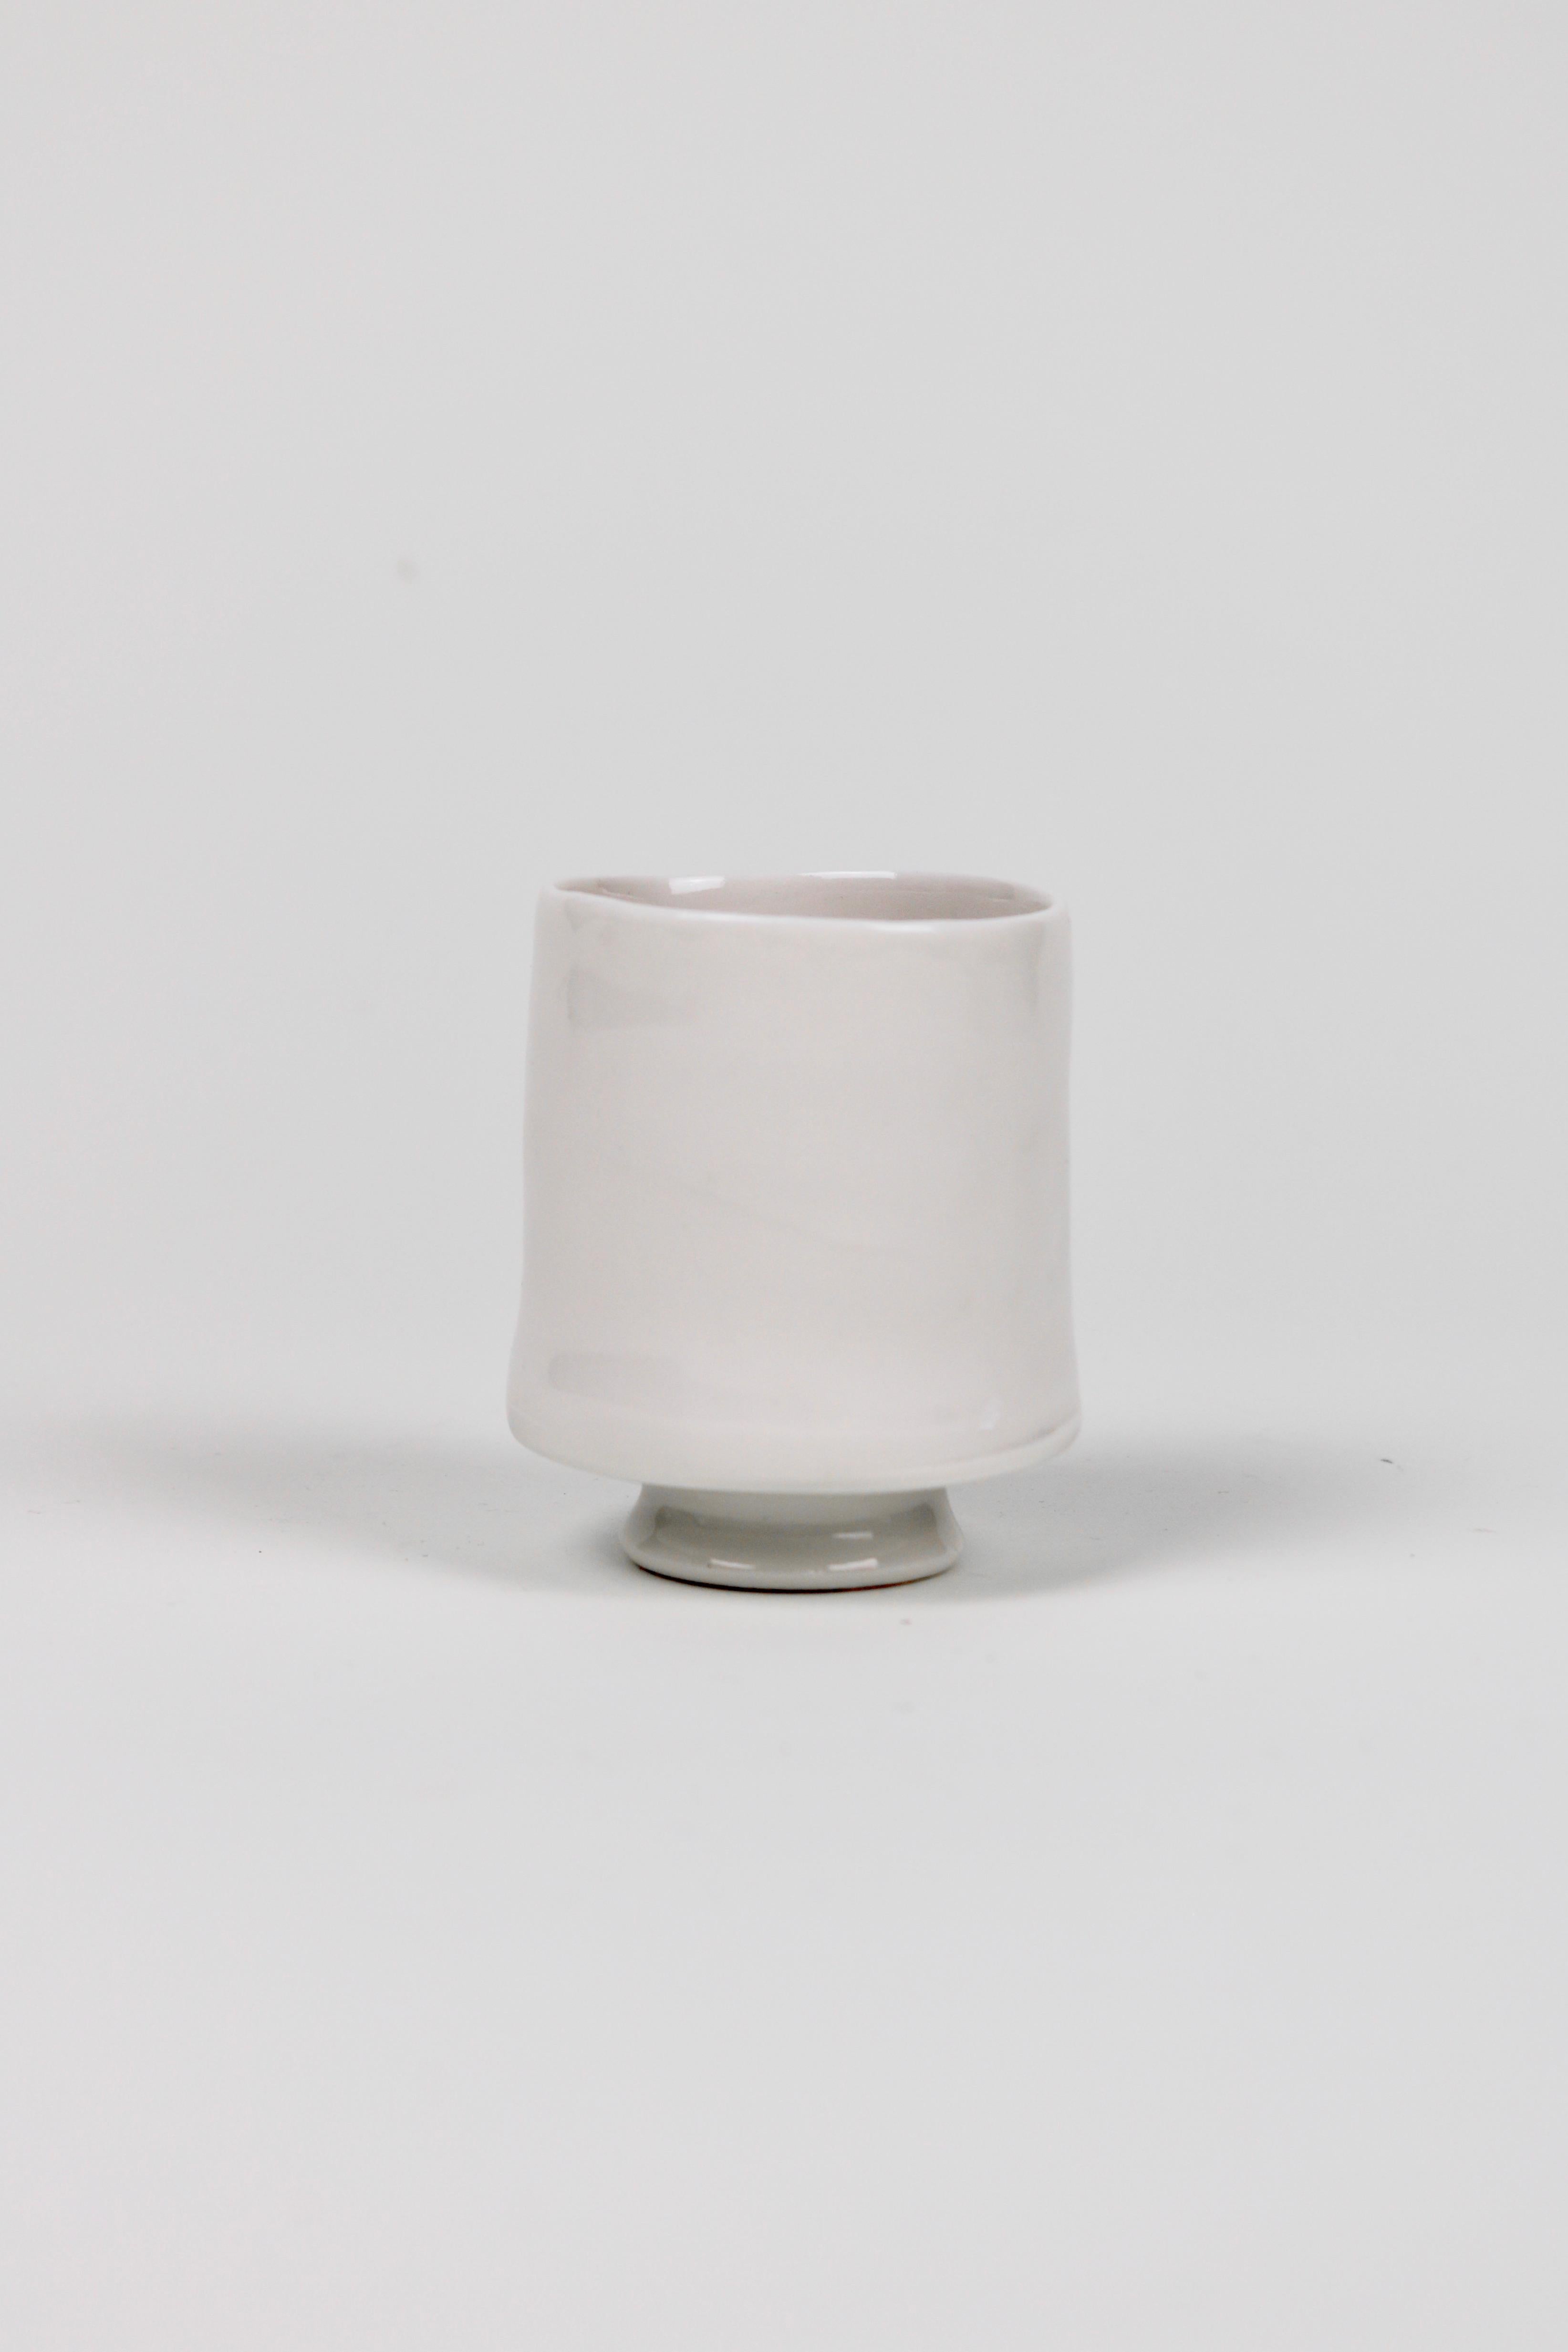 Ashley Howard Porcelain Cup Set For Sale 4